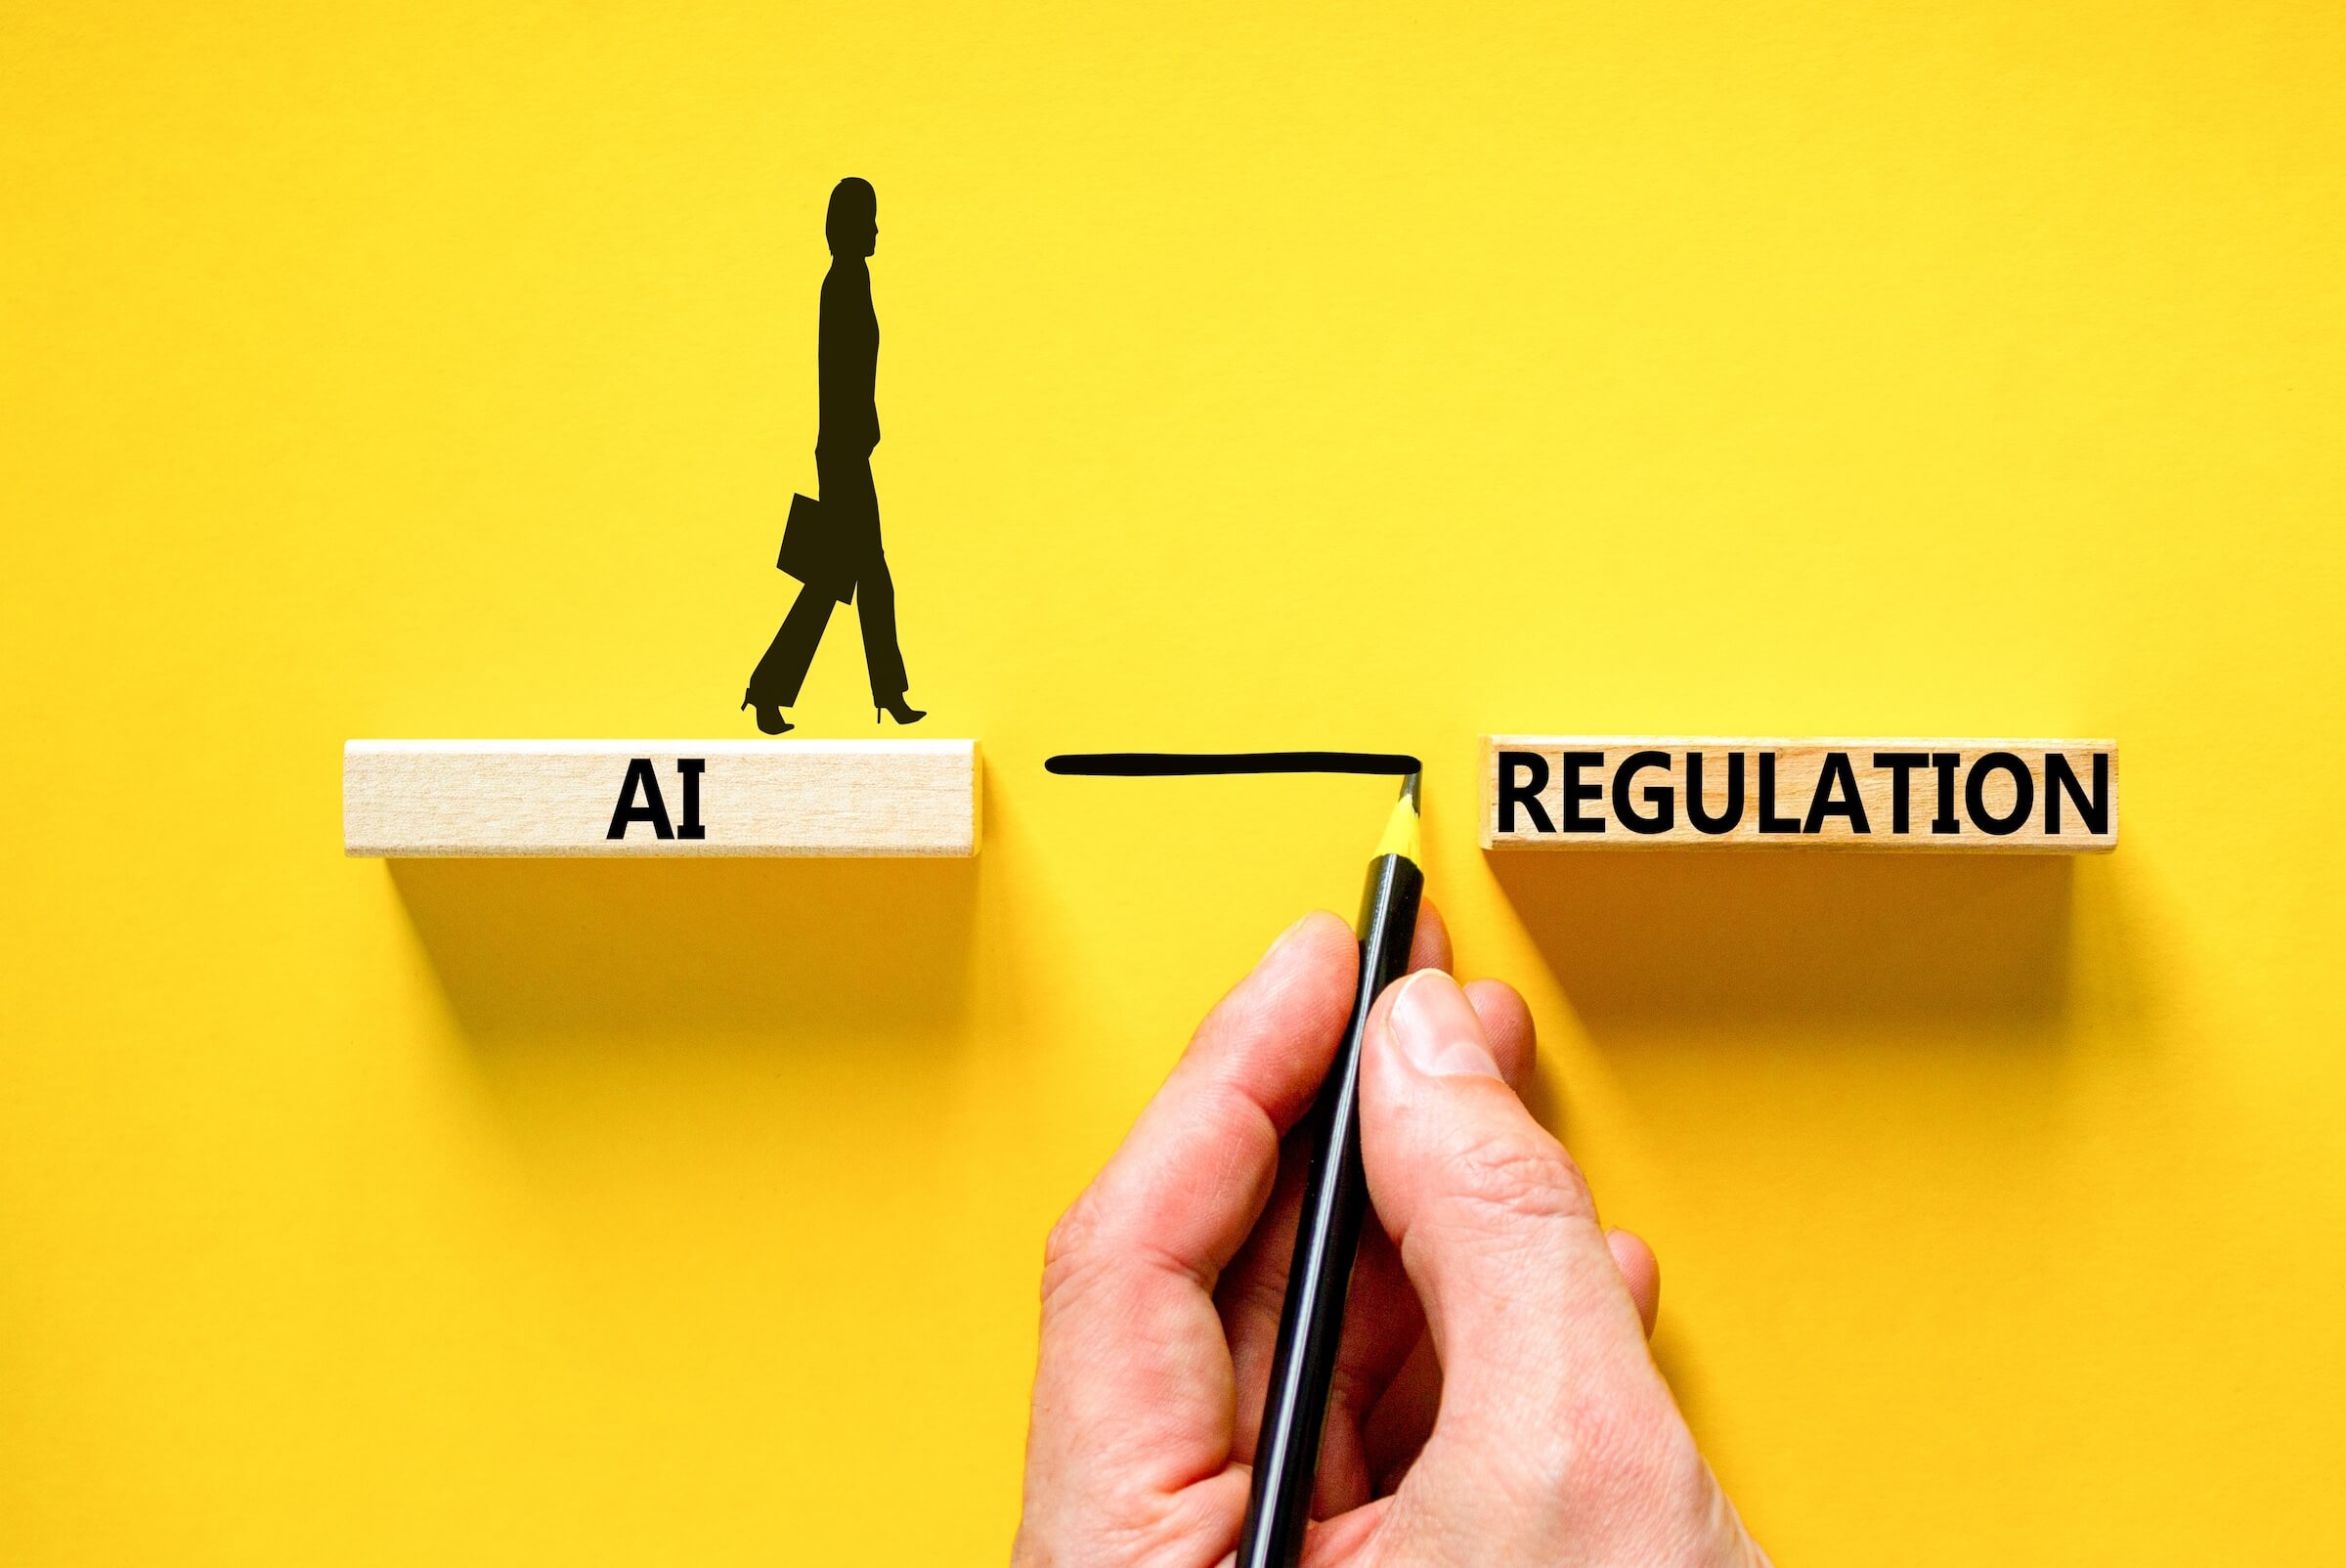 Symbol regulacji AI. Słowa koncepcyjne Regulacja sztucznej inteligencji AI na pięknym drewnianym bloku. Piękne żółte tło. Koncepcja regulacji sztucznej inteligencji biznesowej AI.